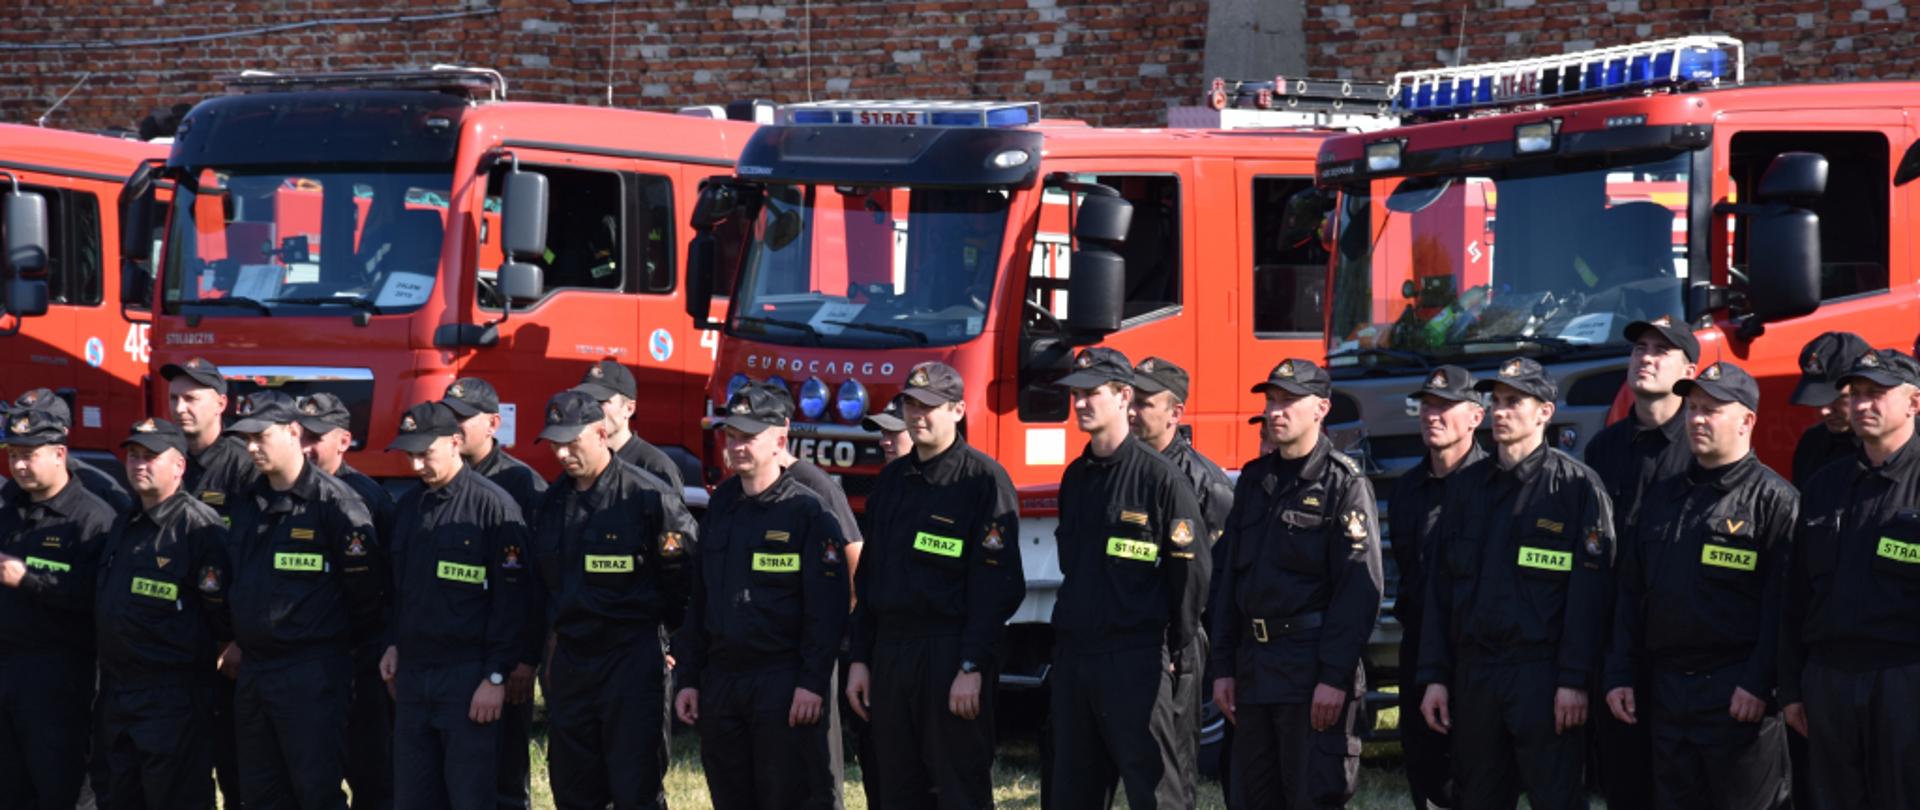 Na zdjęciu zbiórka strażaków, z tyłu za nimi stoją samochody pożarnicze